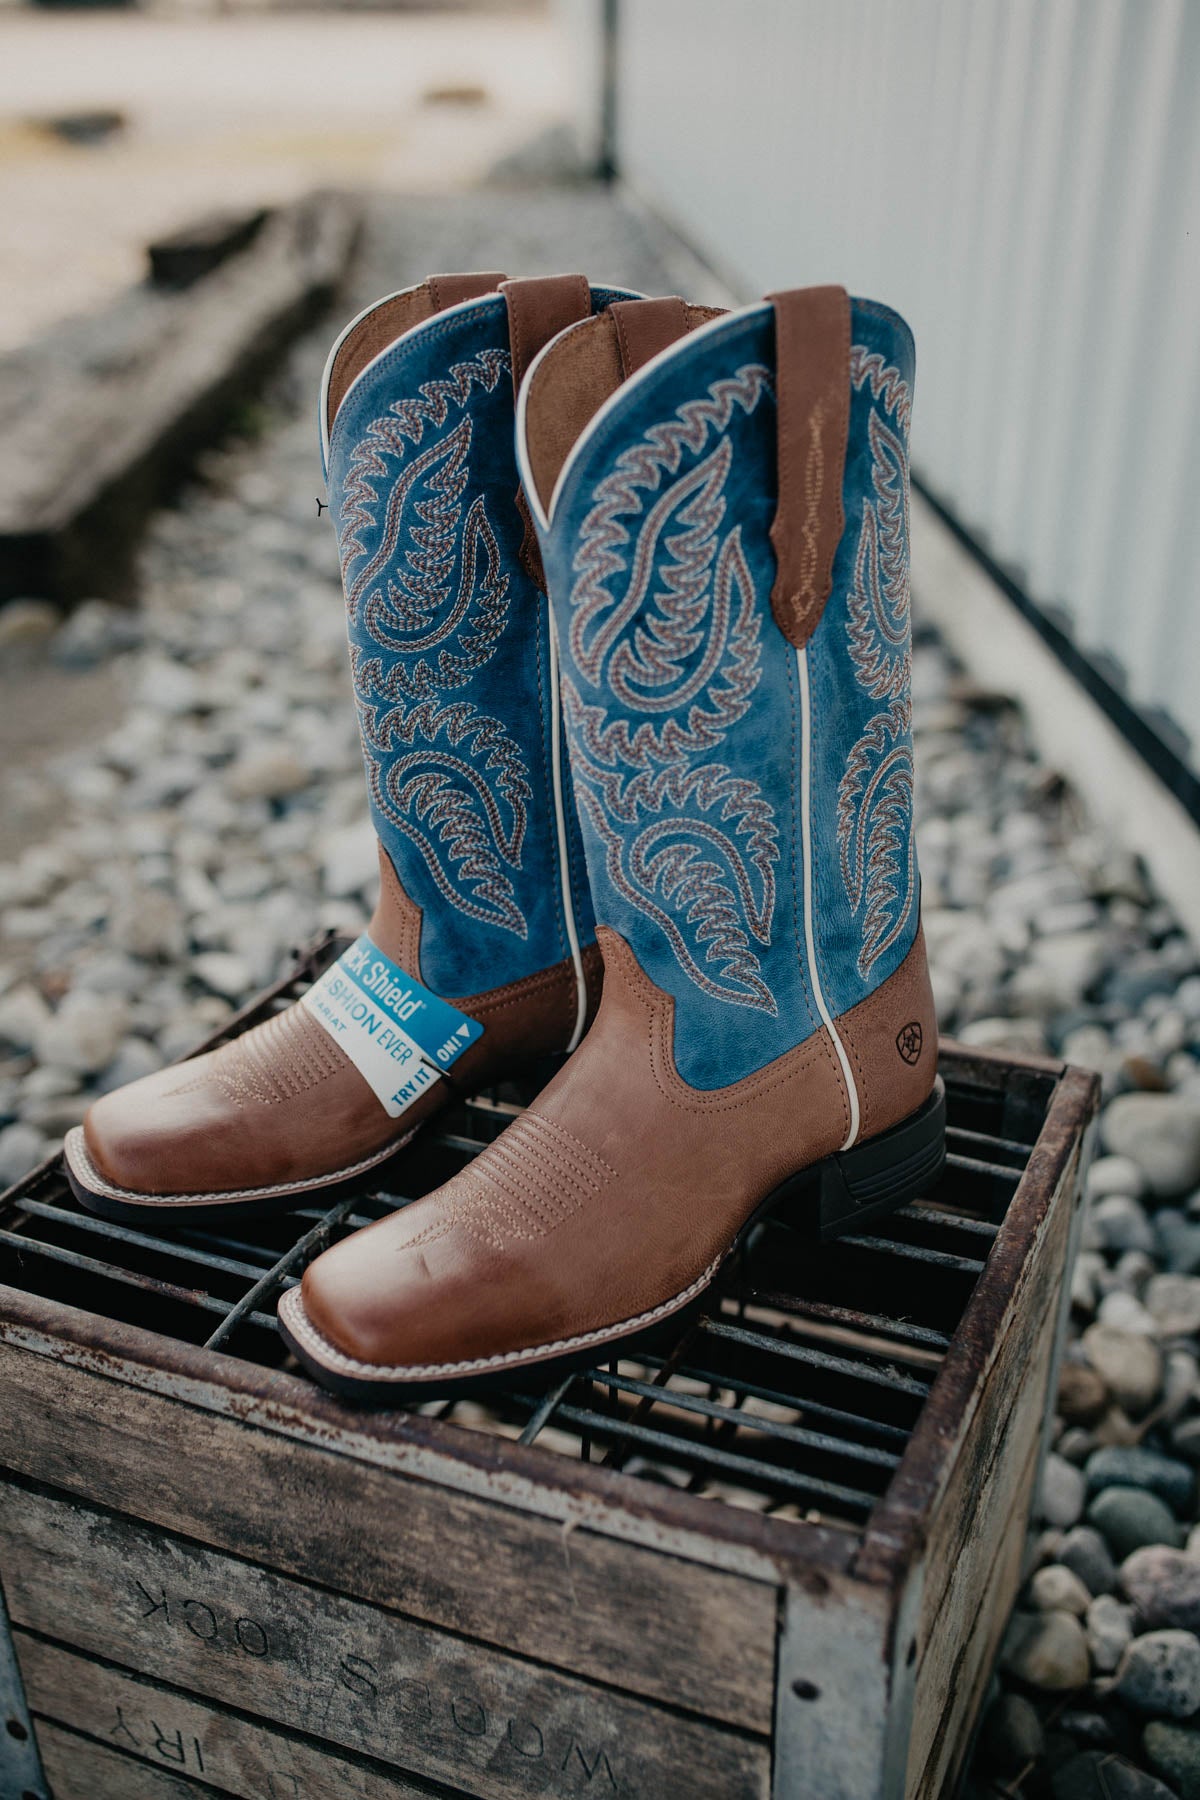 'Cattle Caite' Women's Ariat Stretch-fit Western Boot {Roasted Peanut | Regatta Blue}